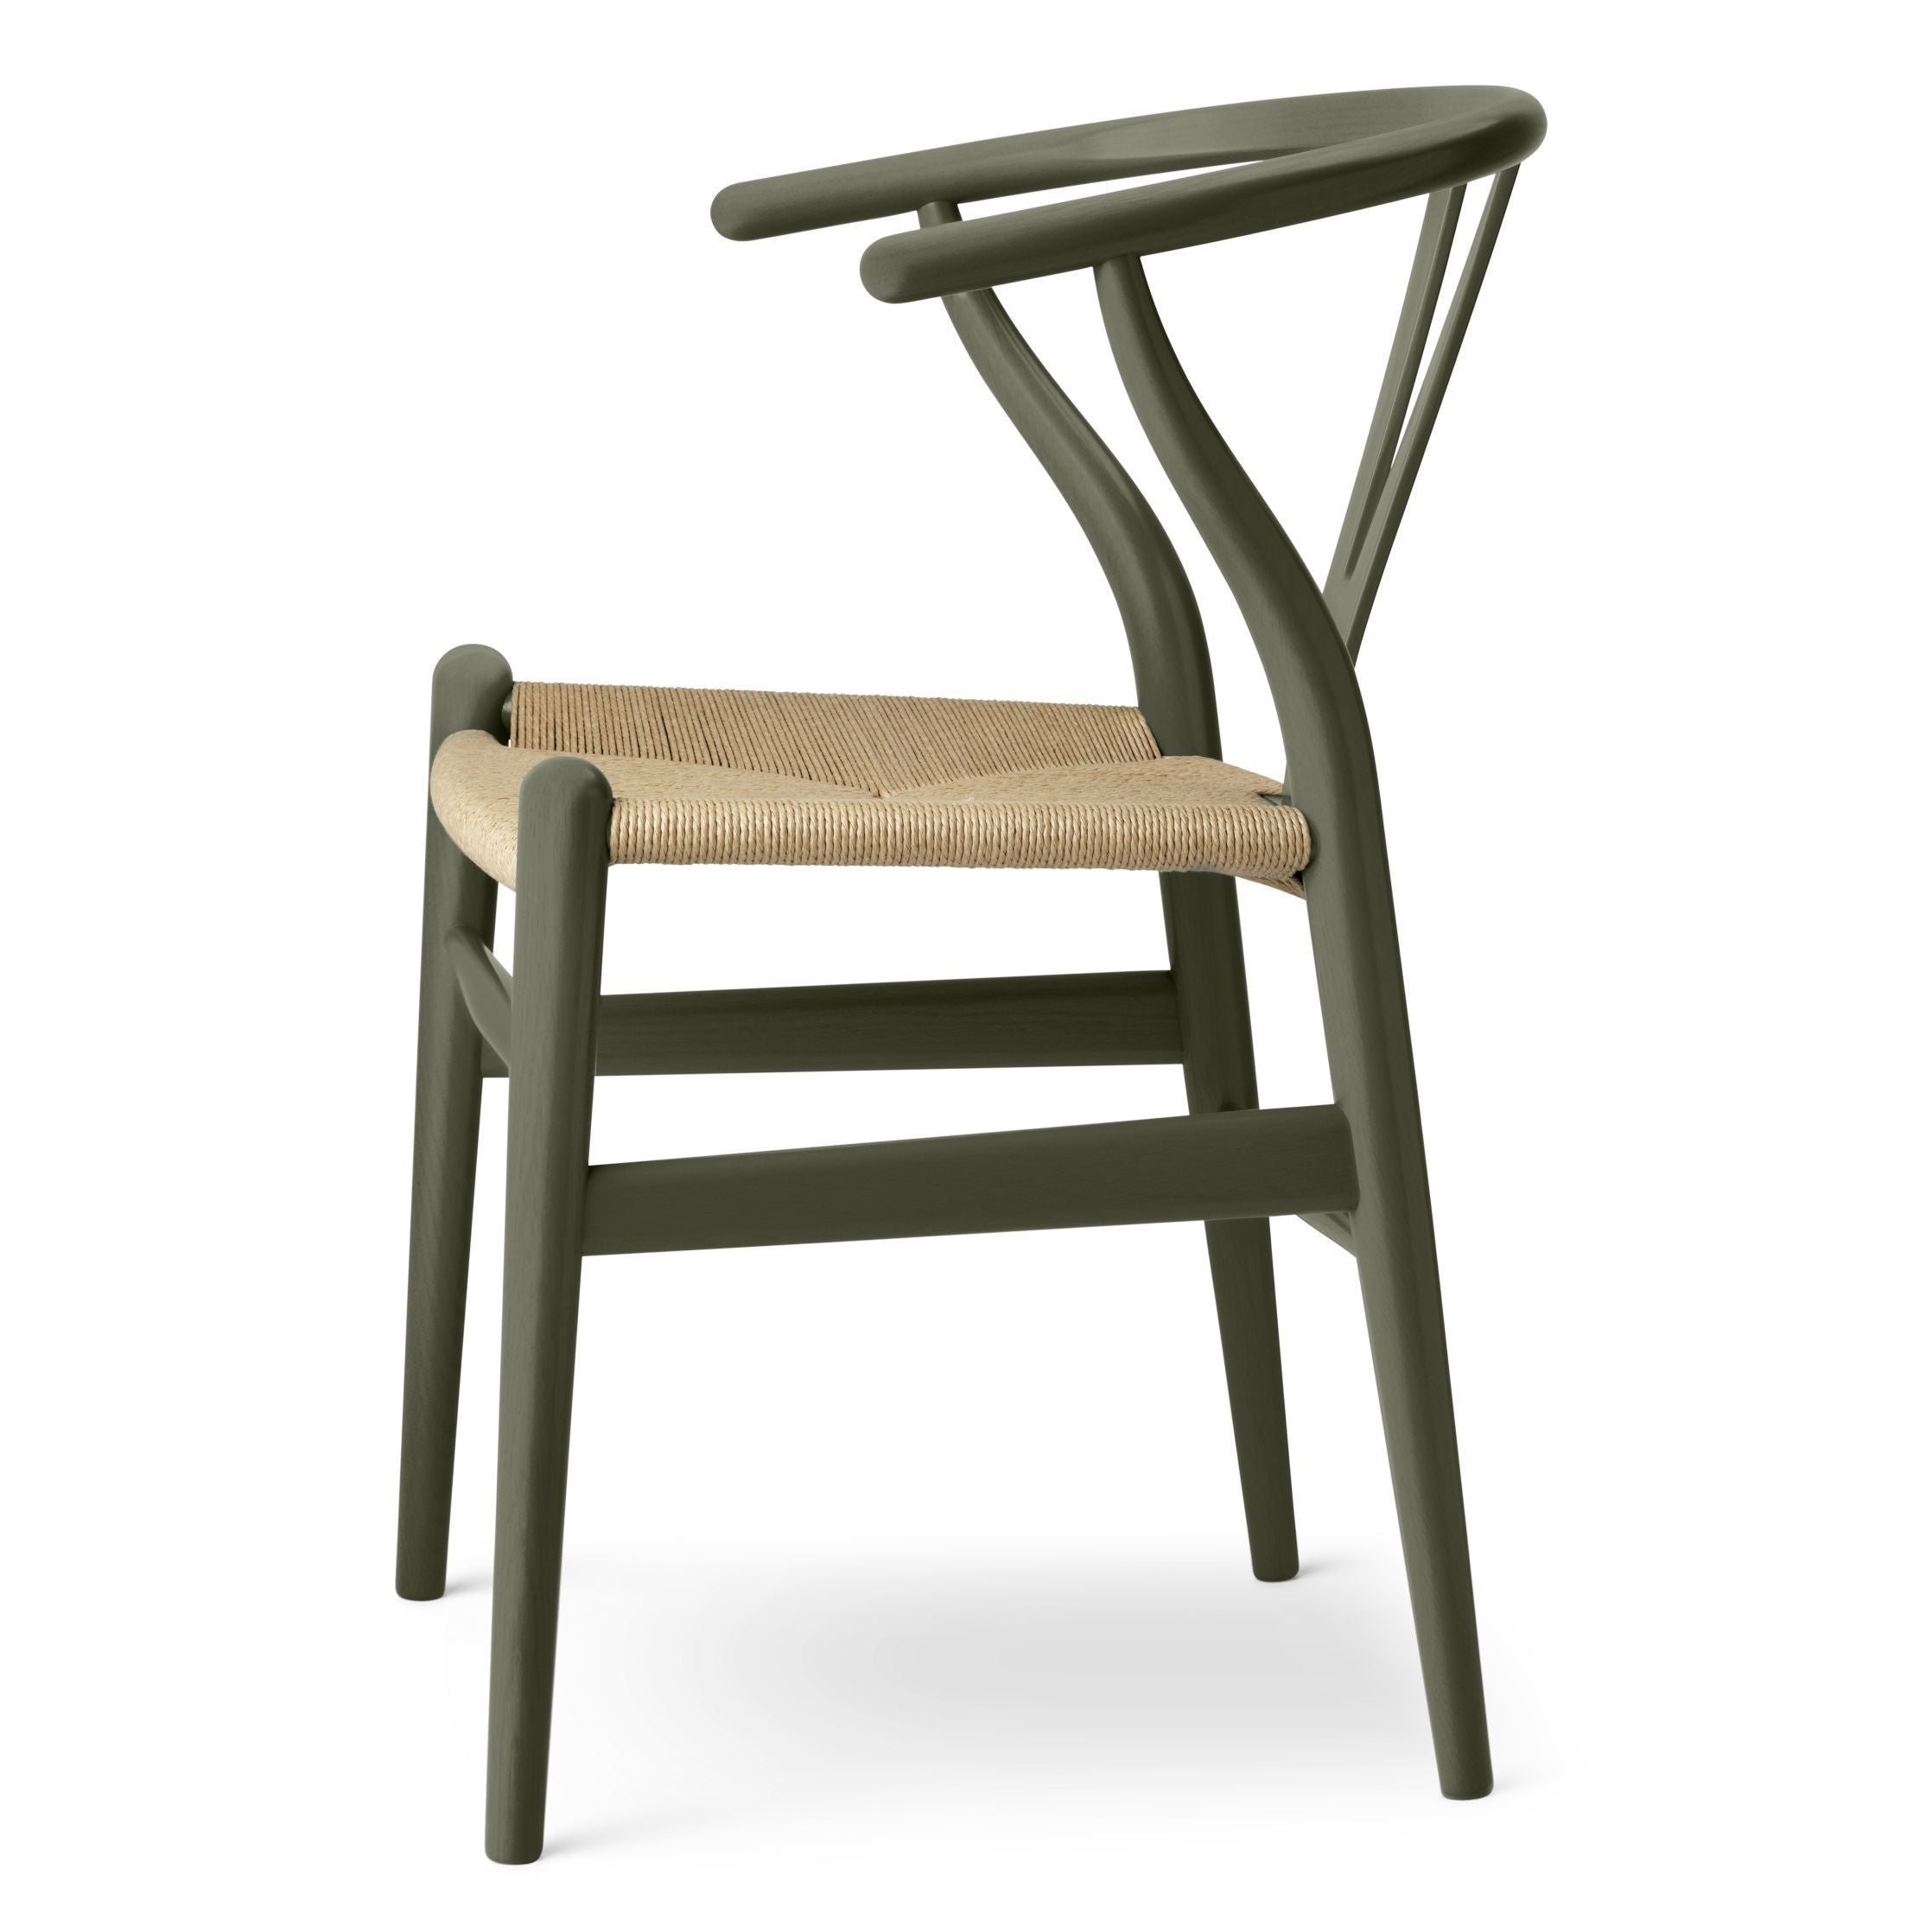 Carl Hansen CH24 Oak de silla de espíritu de tallas, algas marinas/cordón natural